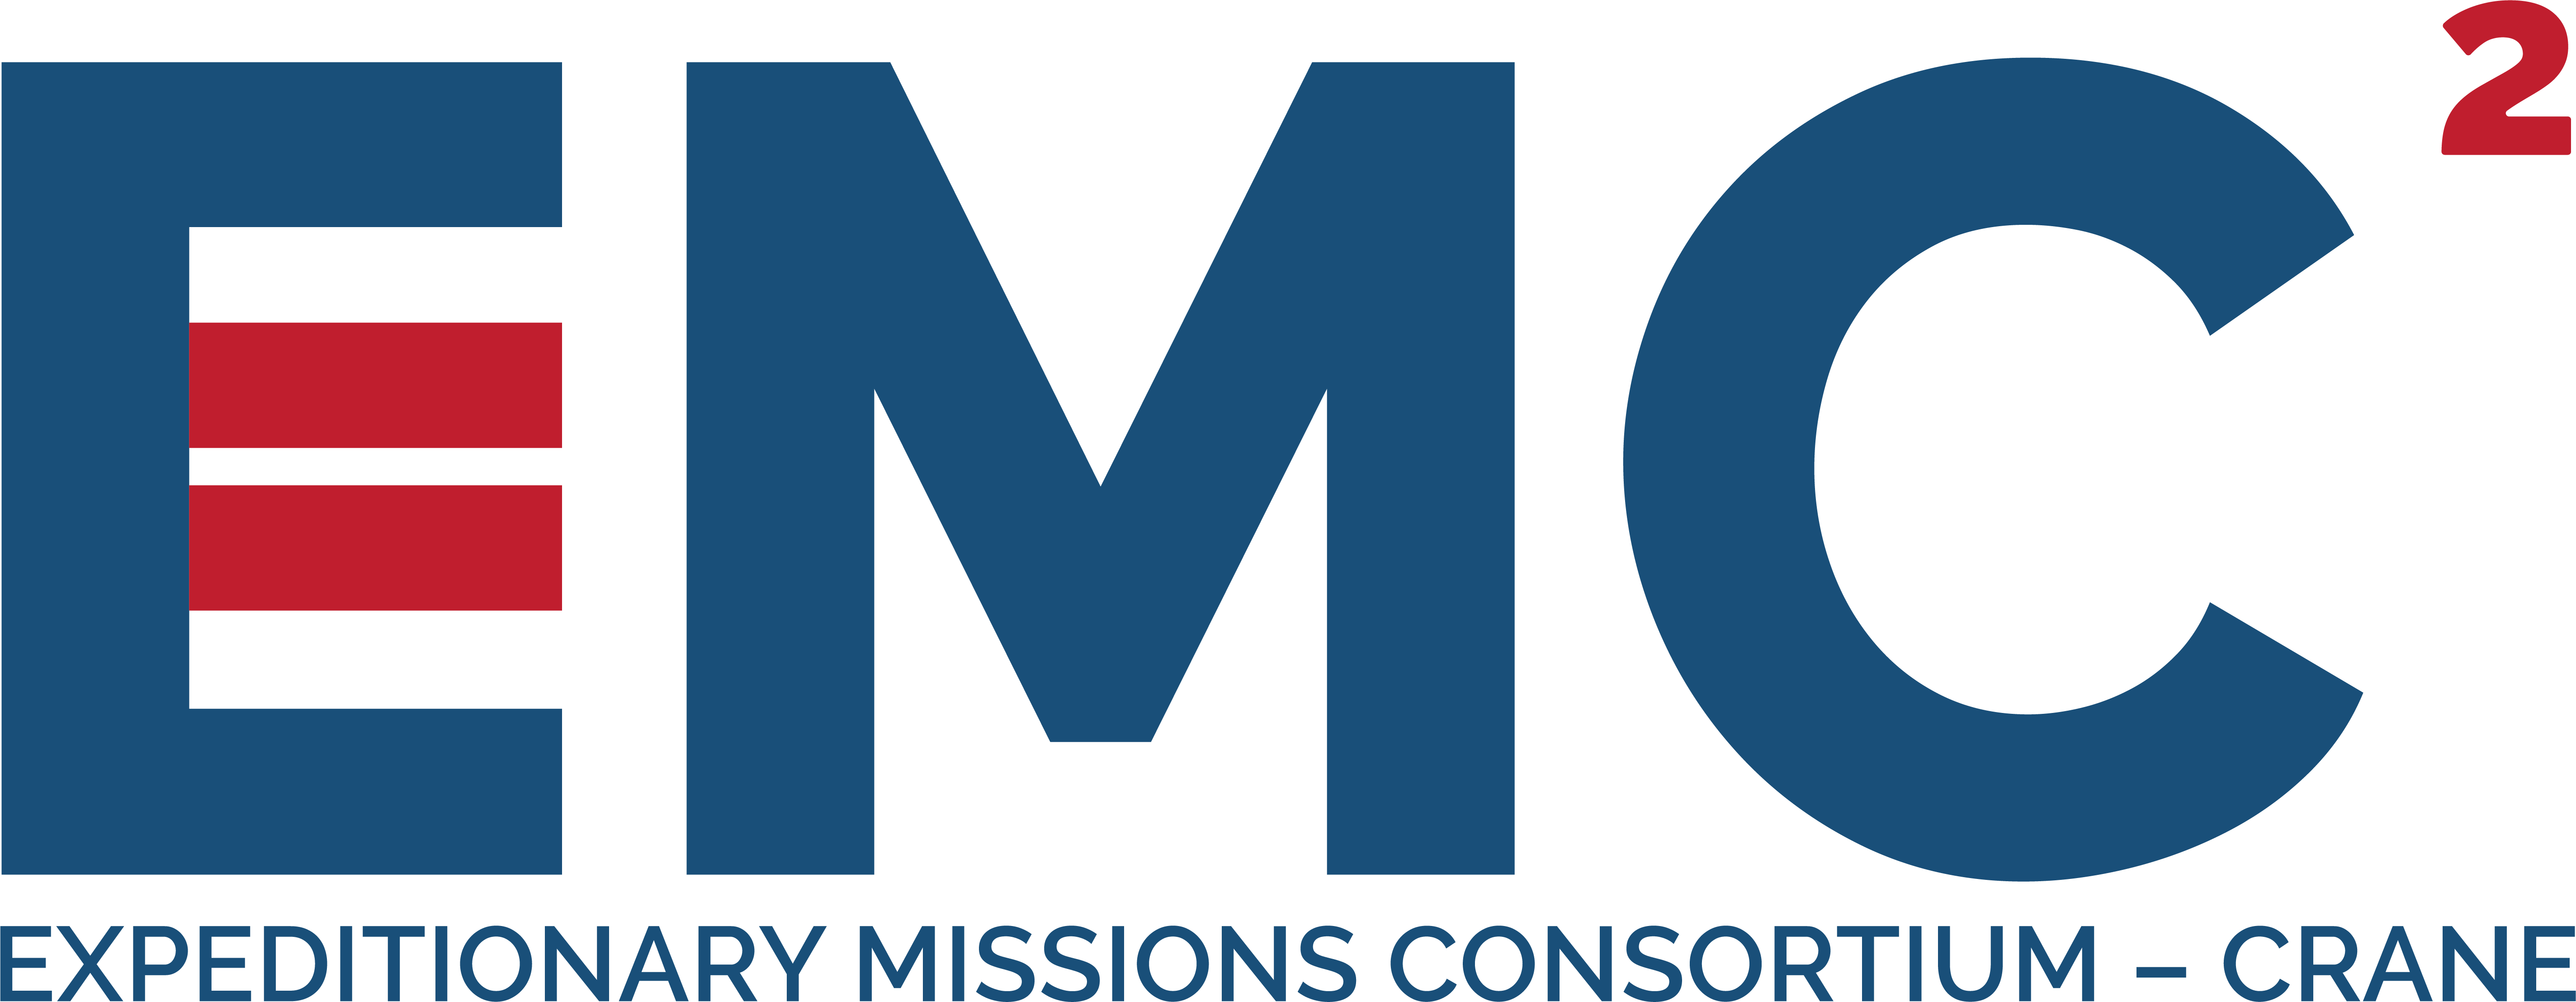 EMC: Expeditionary Missions Consortium Logo